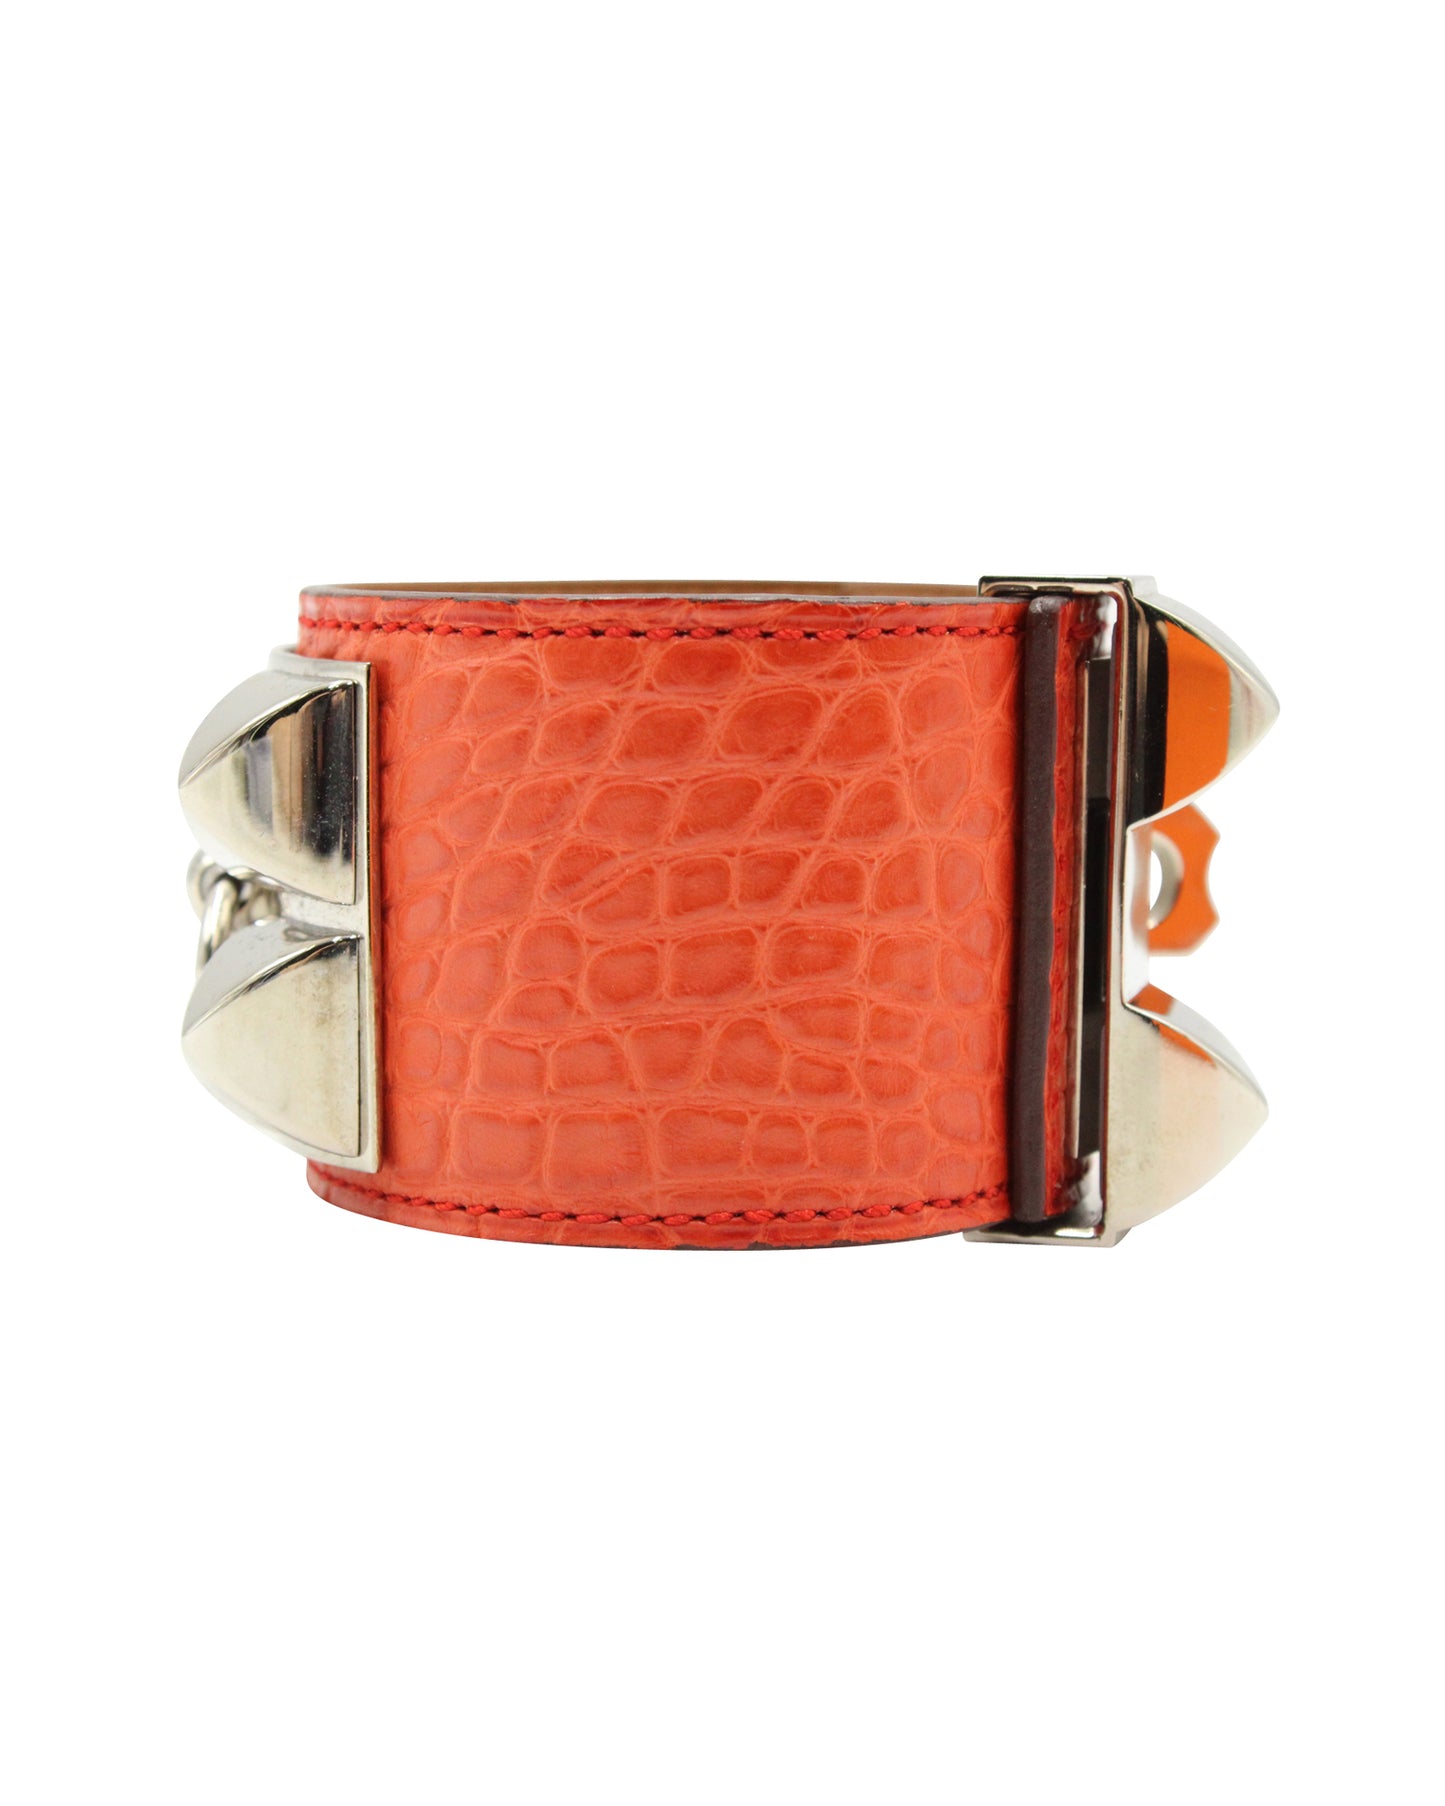 HERMÈS Collier De Chien Bracelet-Orange Alligator Skin - Palladium Hardware